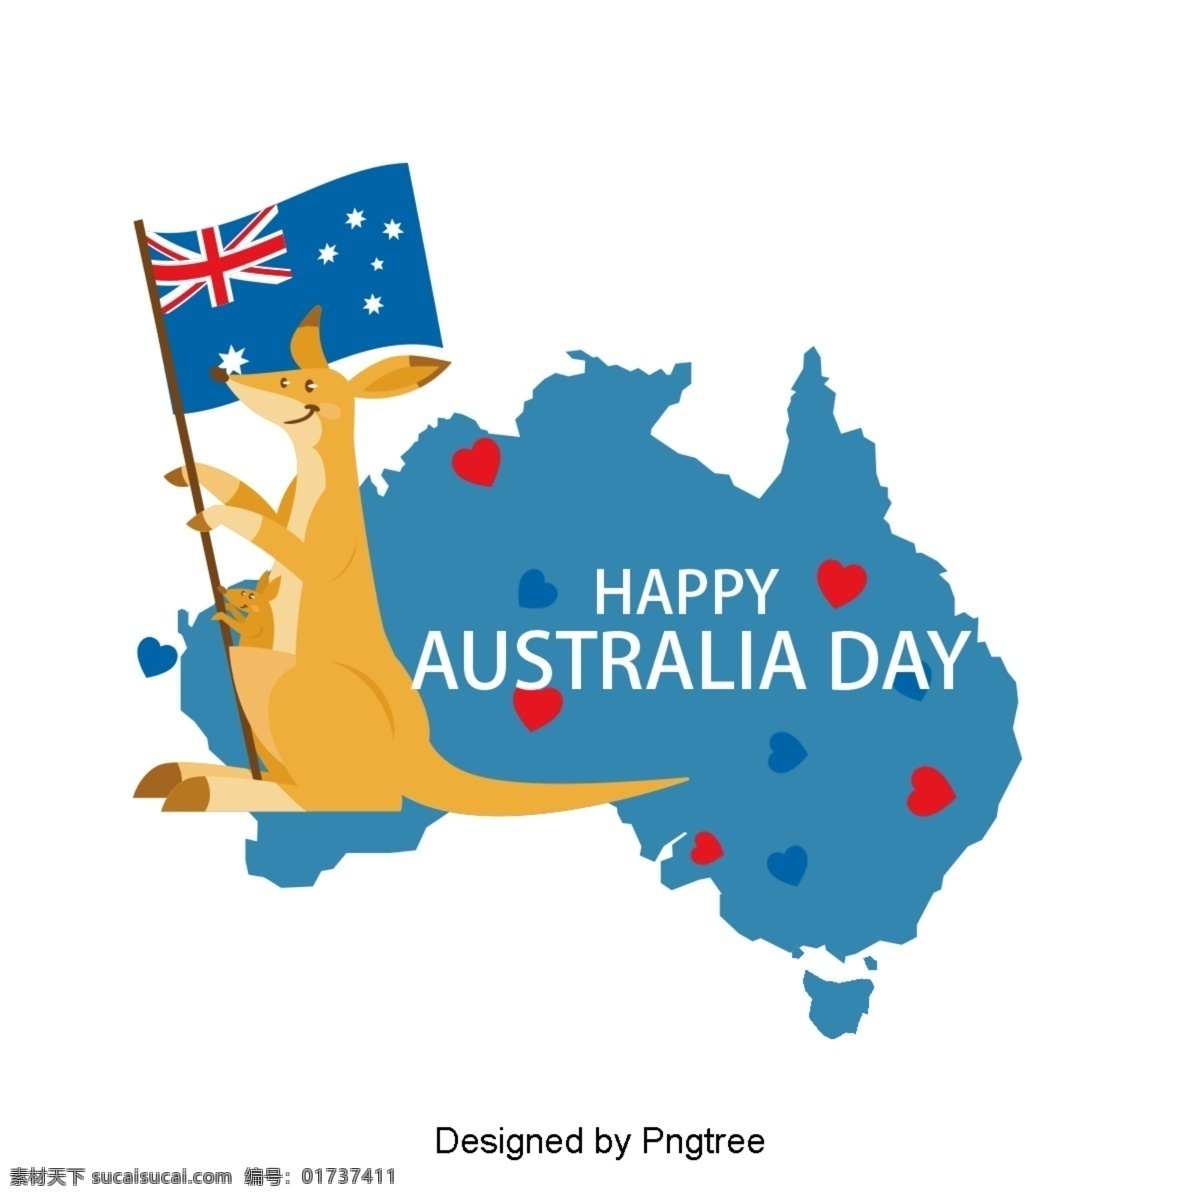 澳大利亚 国旗 蓝色 袋鼠 爱心 旗帜 地图 字体 红色 澳大利亚日